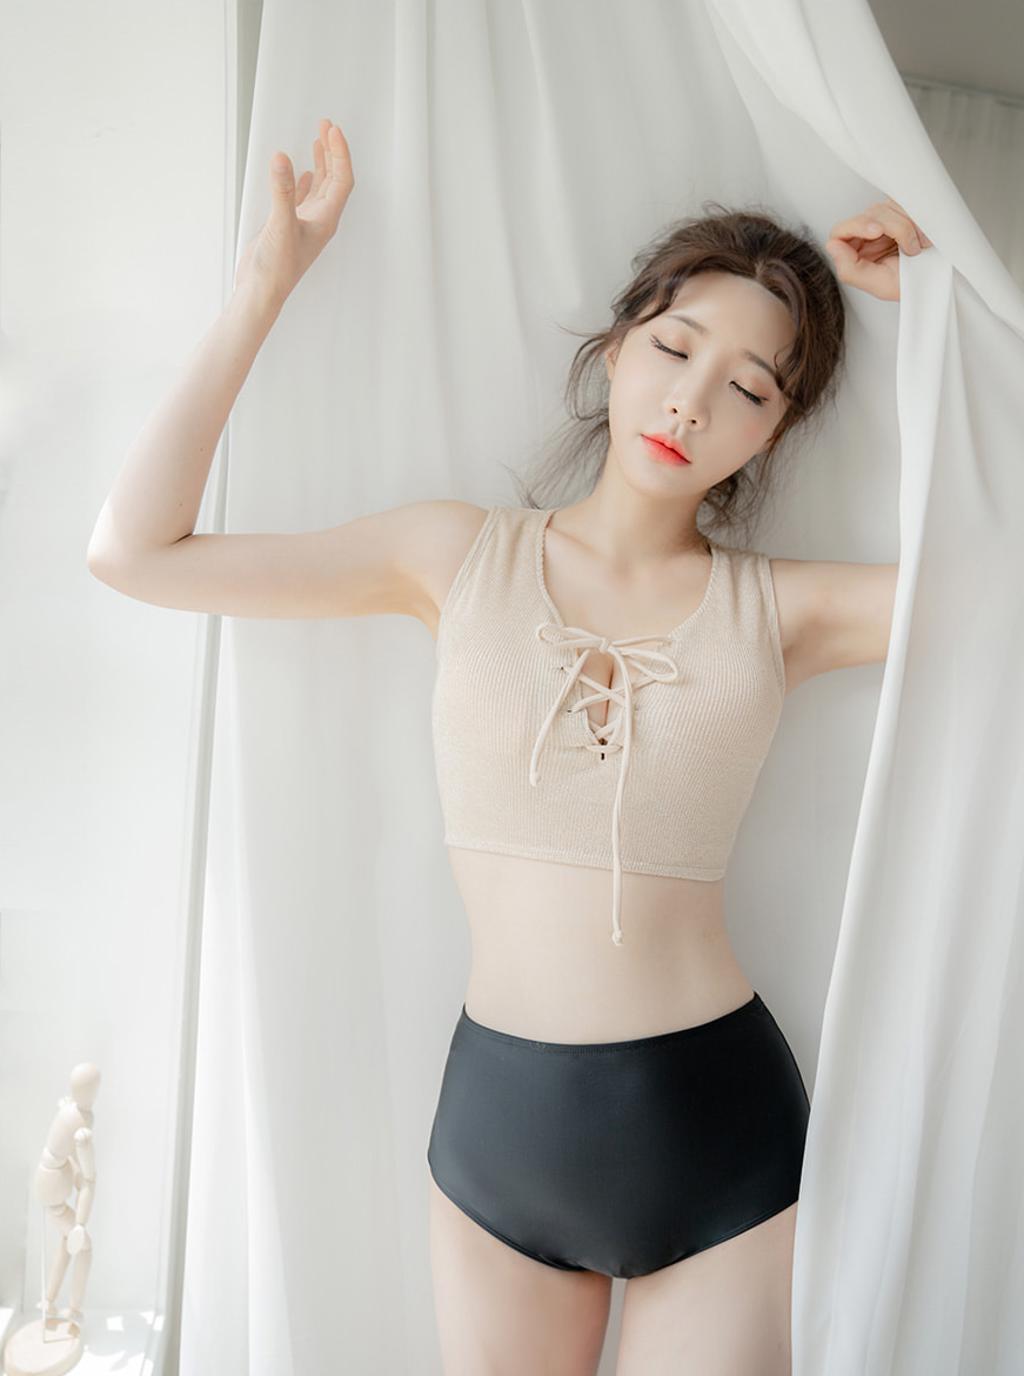 韩国M女模特.韩国美女模特写真集.Thor055